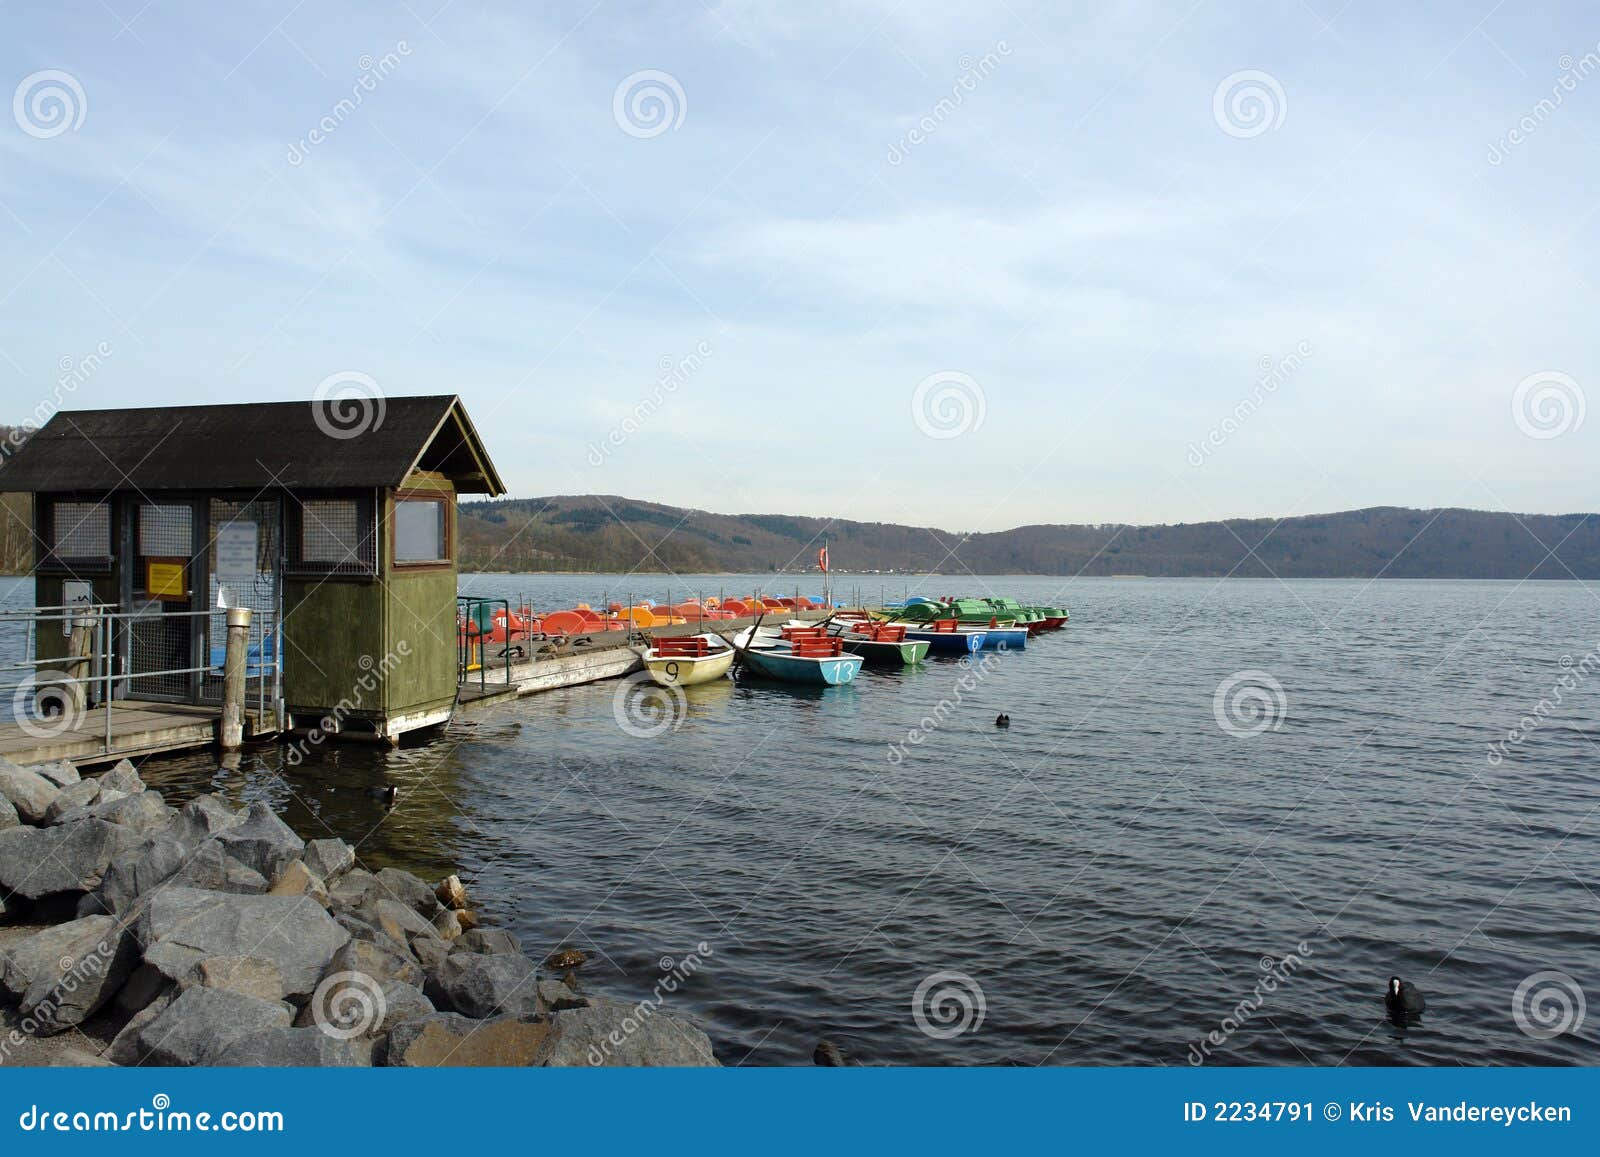 Rental Boats At Lake Stock Image - Image: 2234791